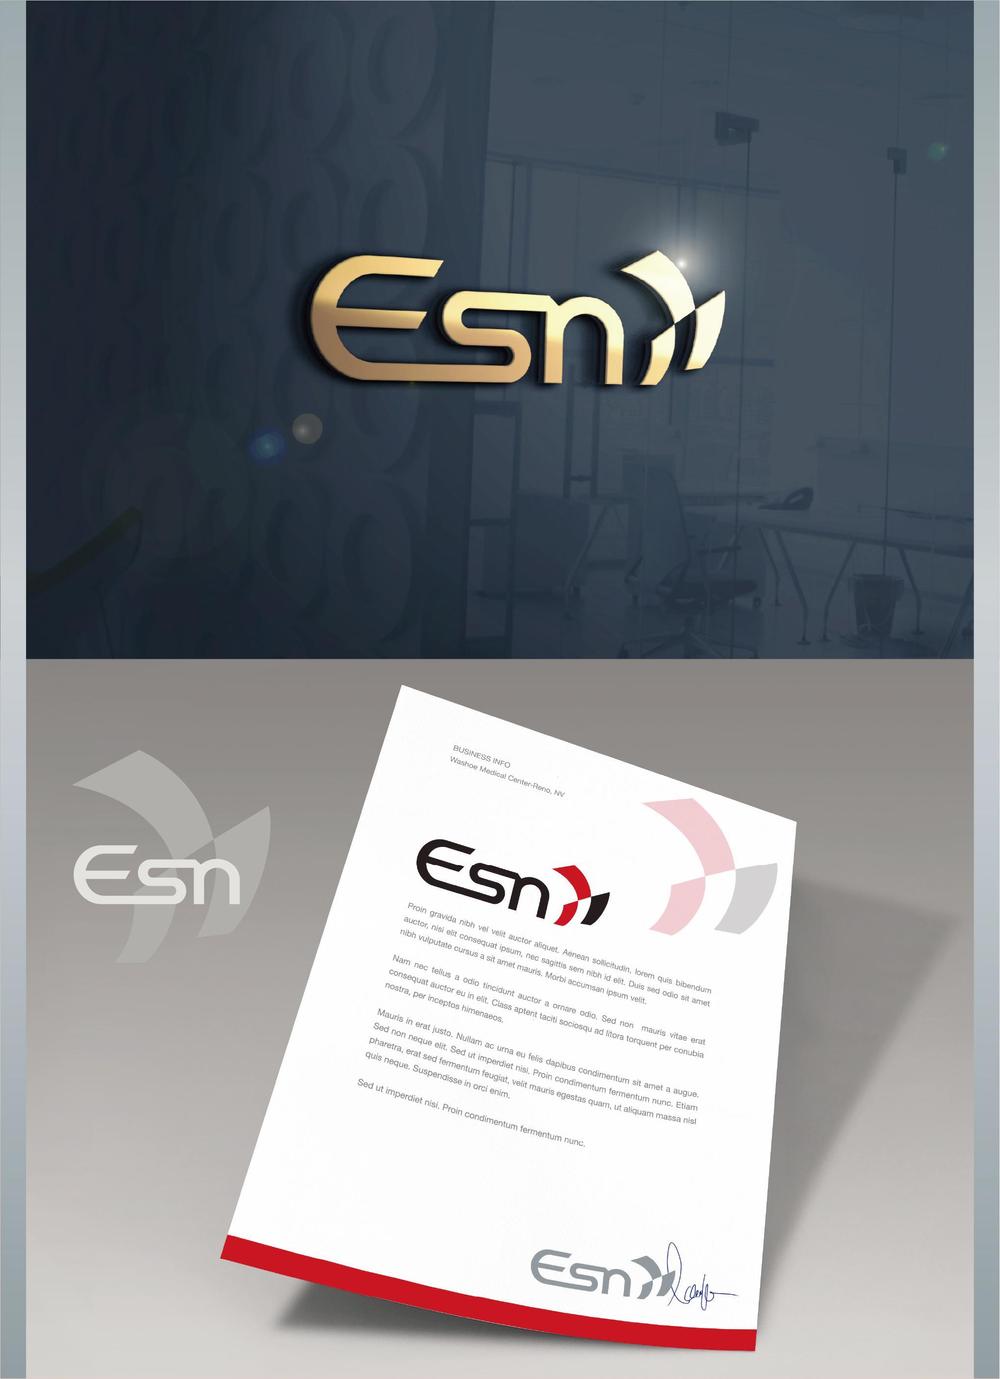 音響オペレート、パーカッション販売等の会社「Esn イーサン」のロゴ